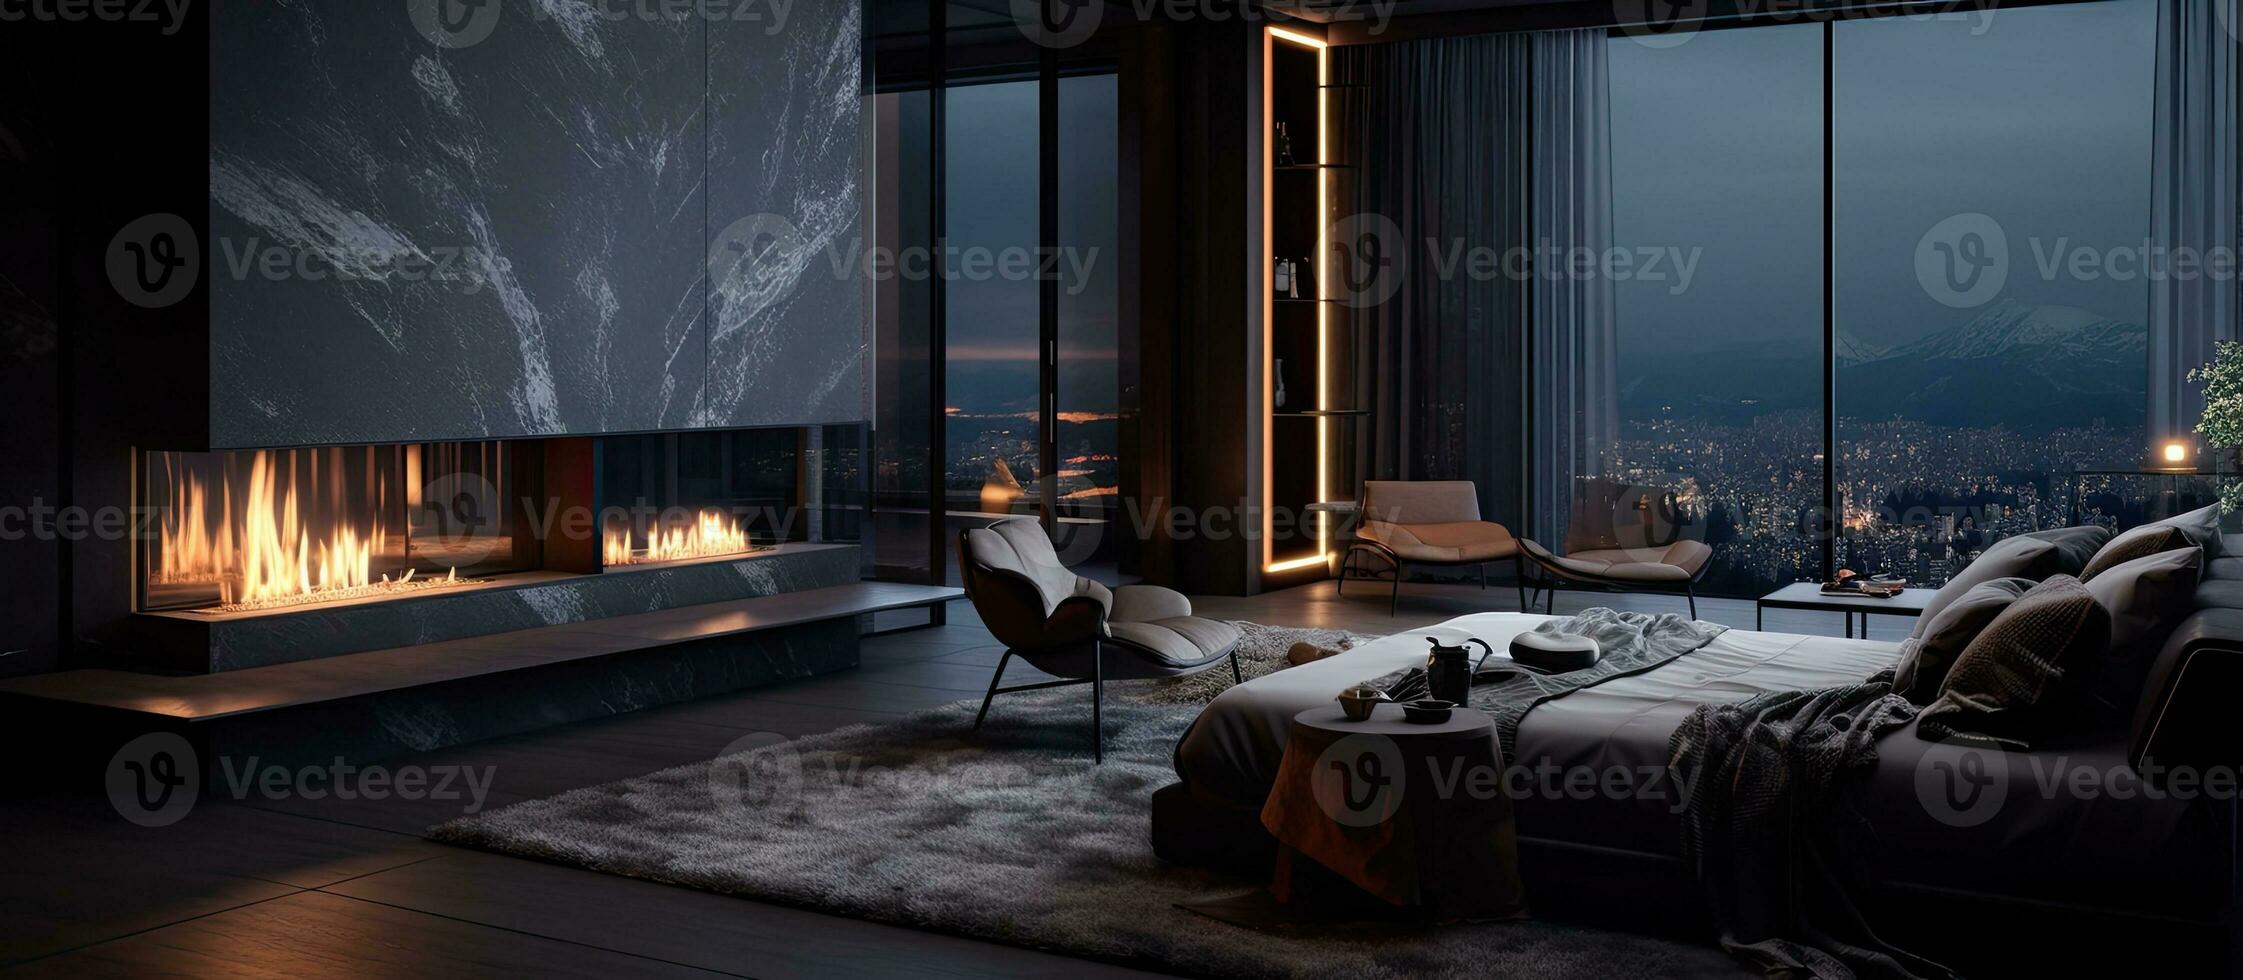 contemporaneo uomo S appartamento con elegante arredamento illuminato muri camino e spazioso finestra foto